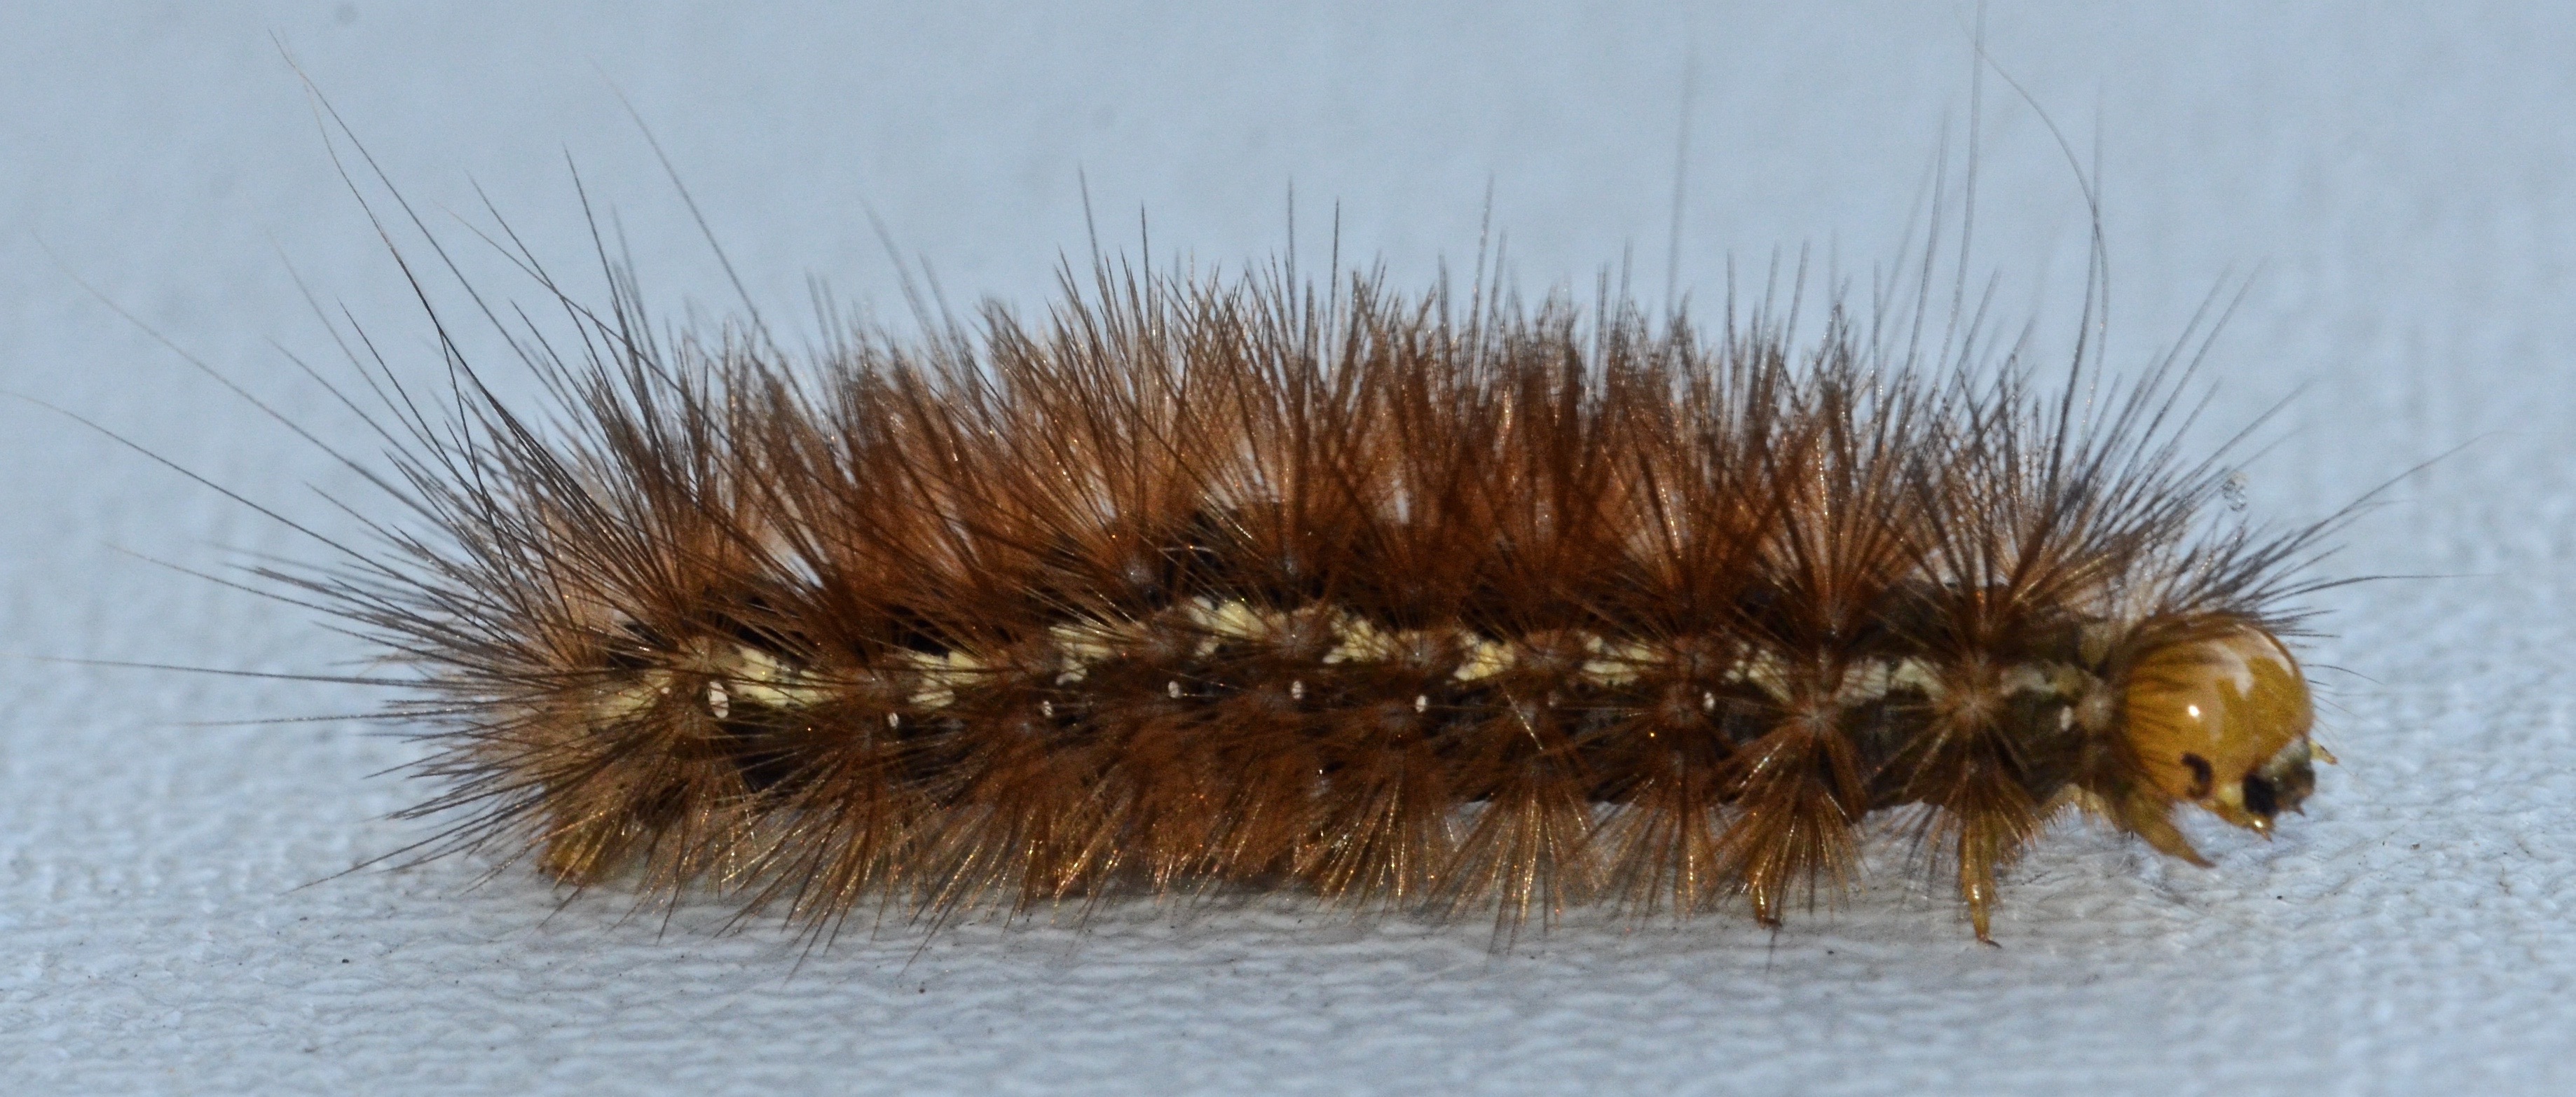 NaturePlus: Please id this hairy caterpillar.